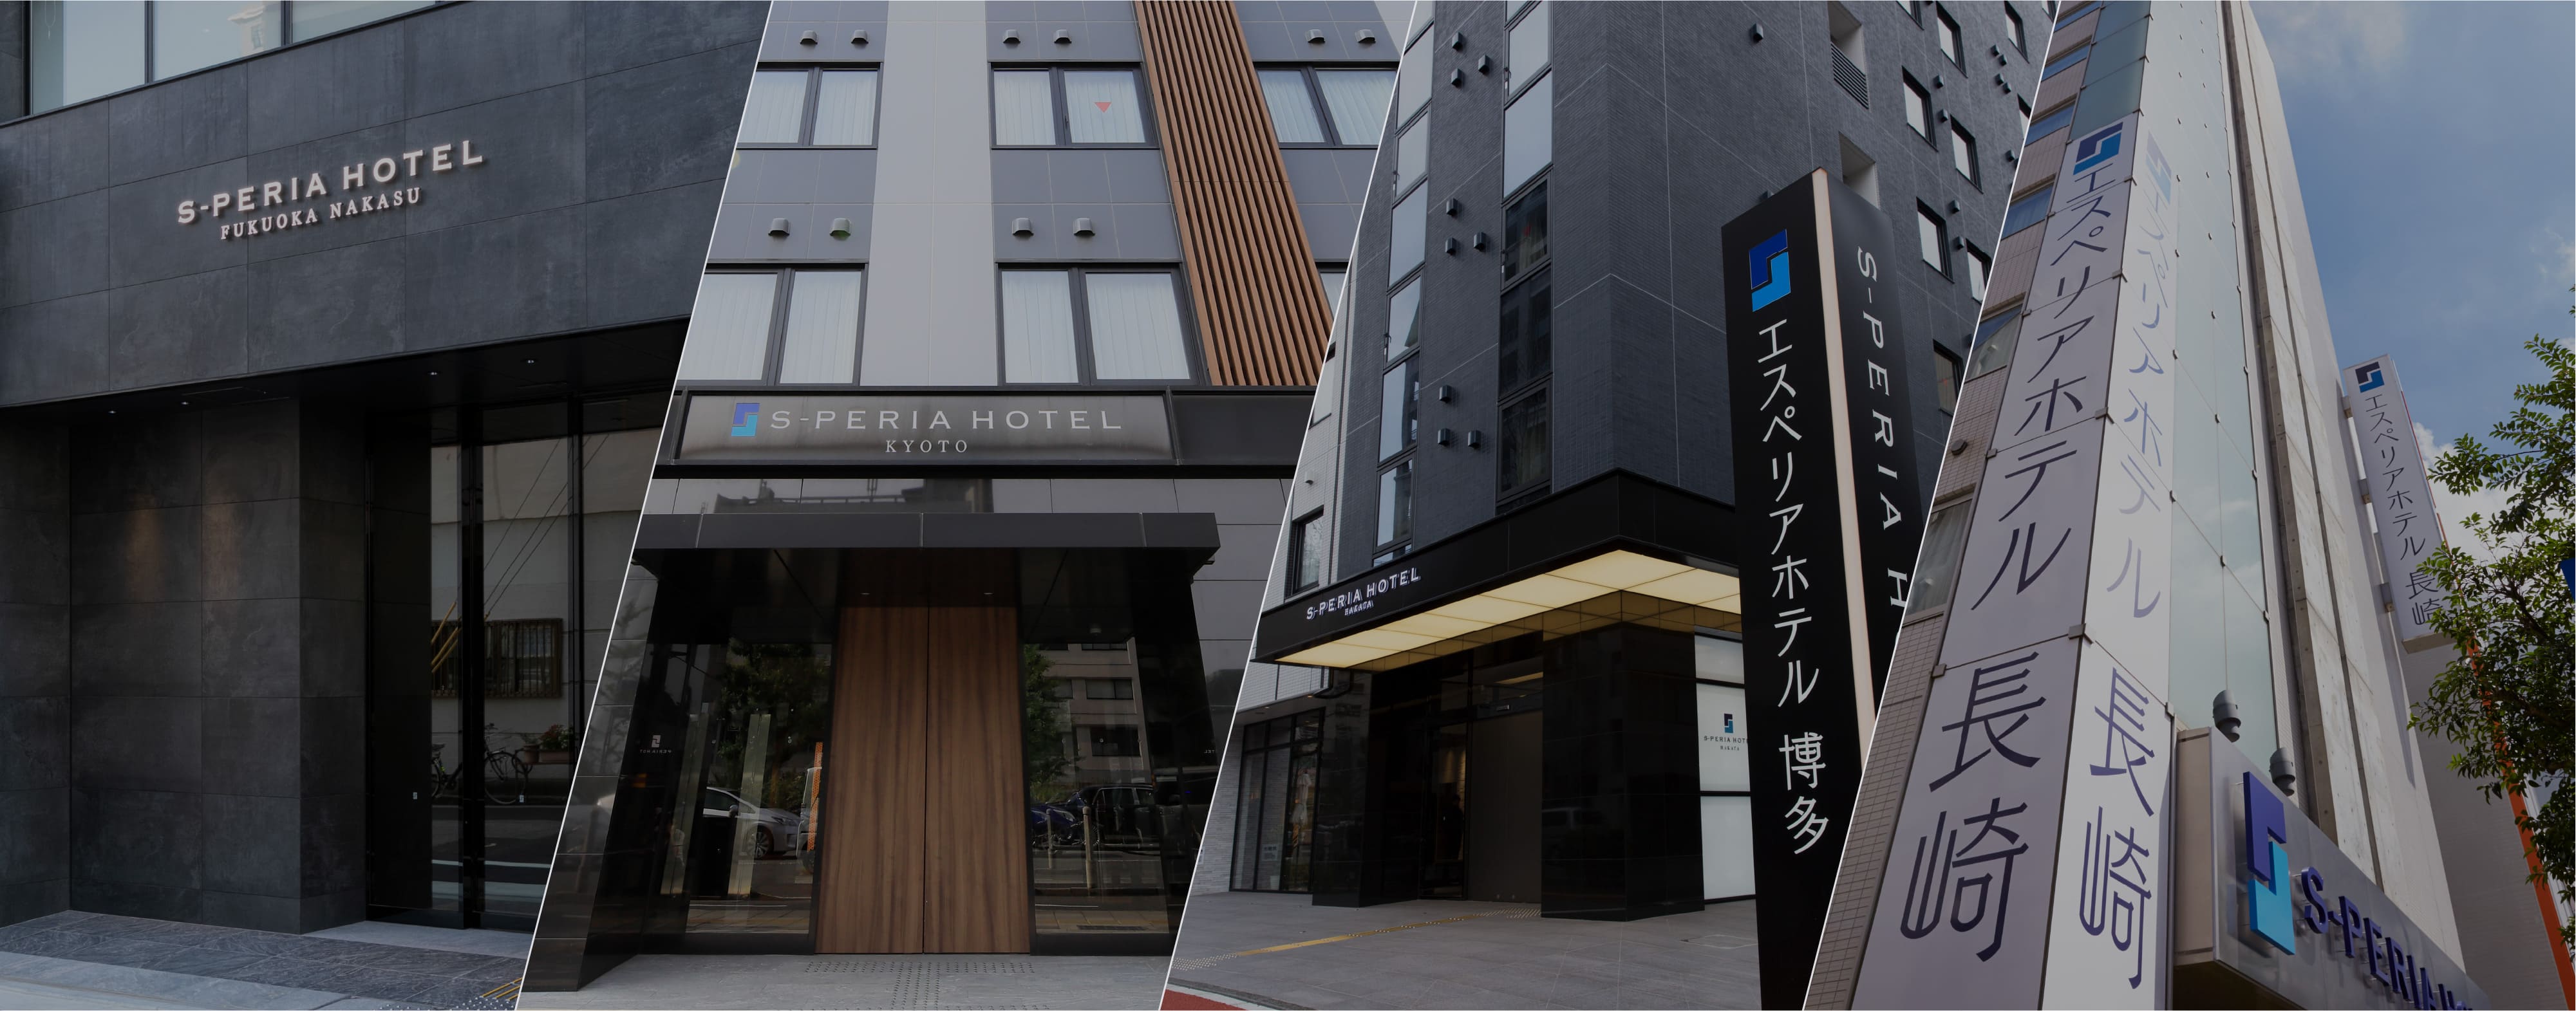 S-PERIA Hotel Fukuoka Nakasu 外観 / S-PERIA Hotel Kyoto 外観 / S-PERIA Hotel Hakata 外観 / S-PERIA Hotel Nagasaki 外観